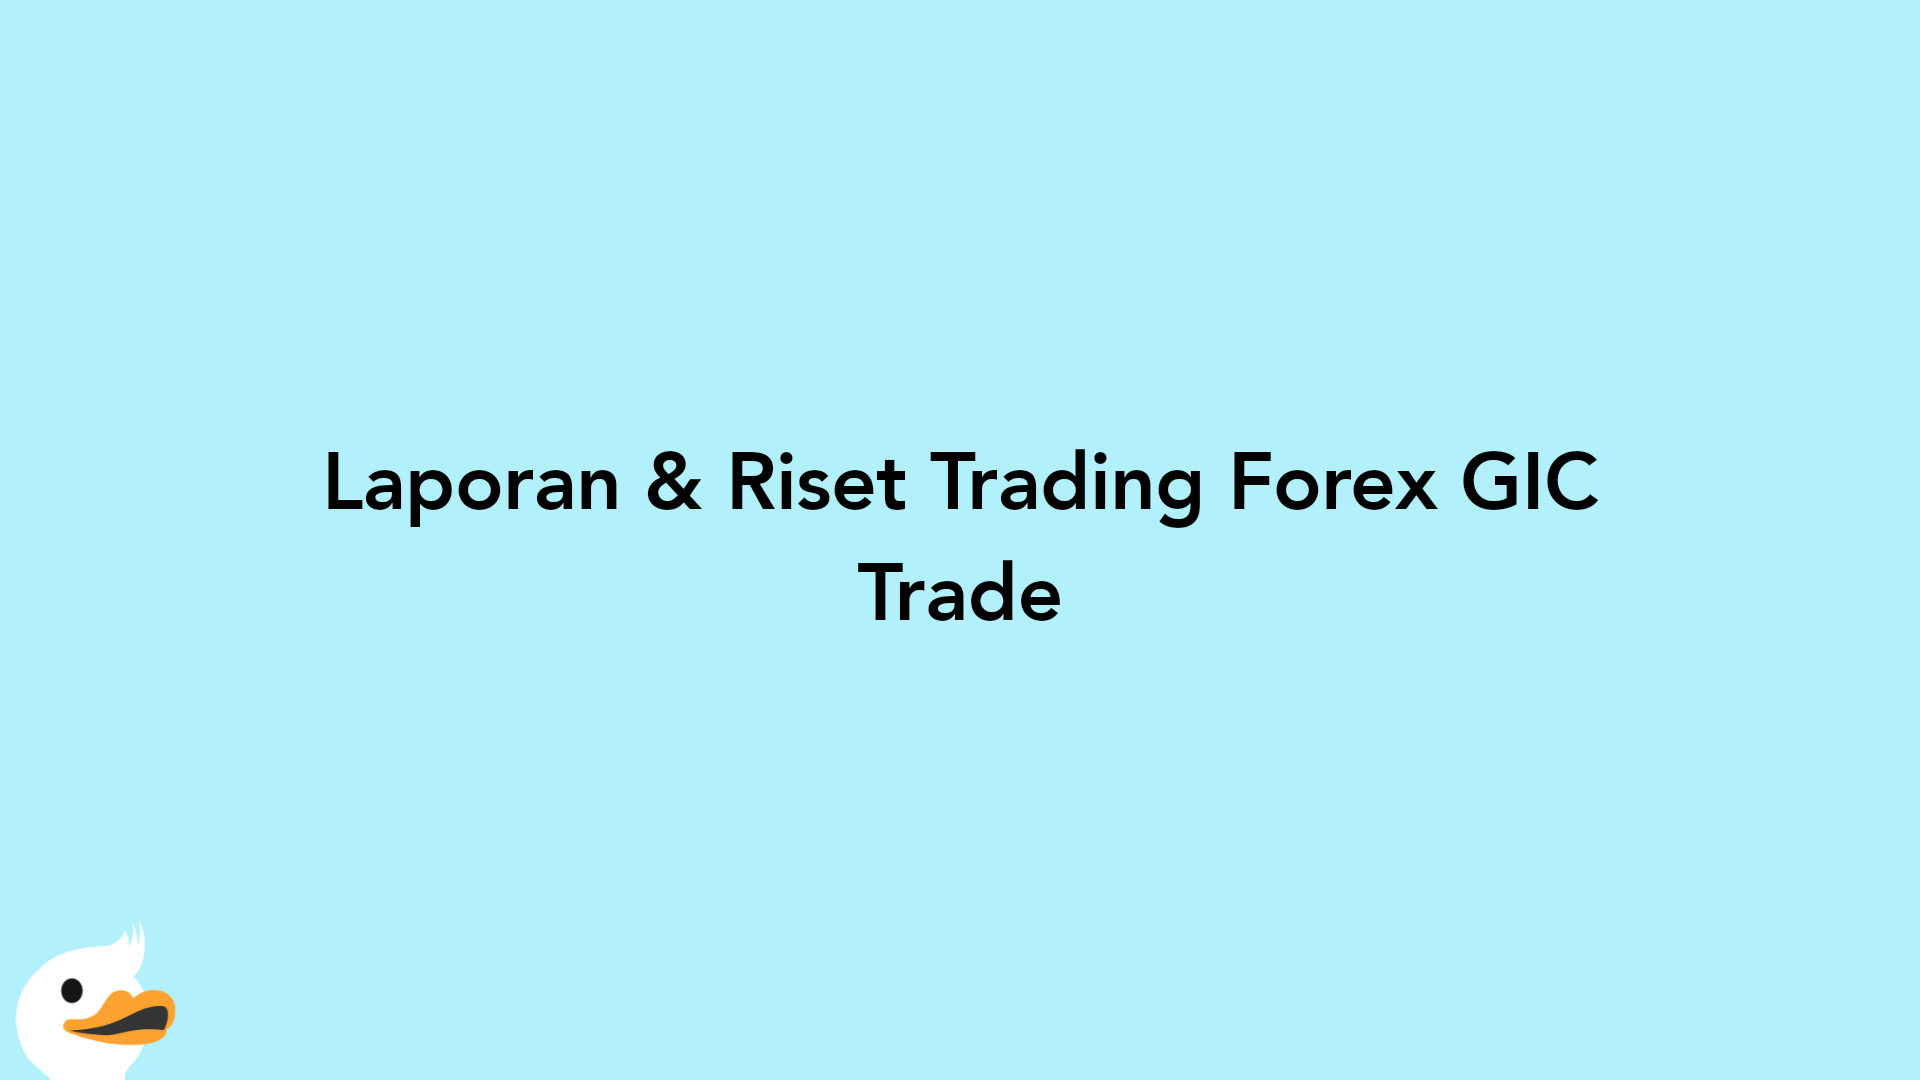 Laporan & Riset Trading Forex GIC Trade